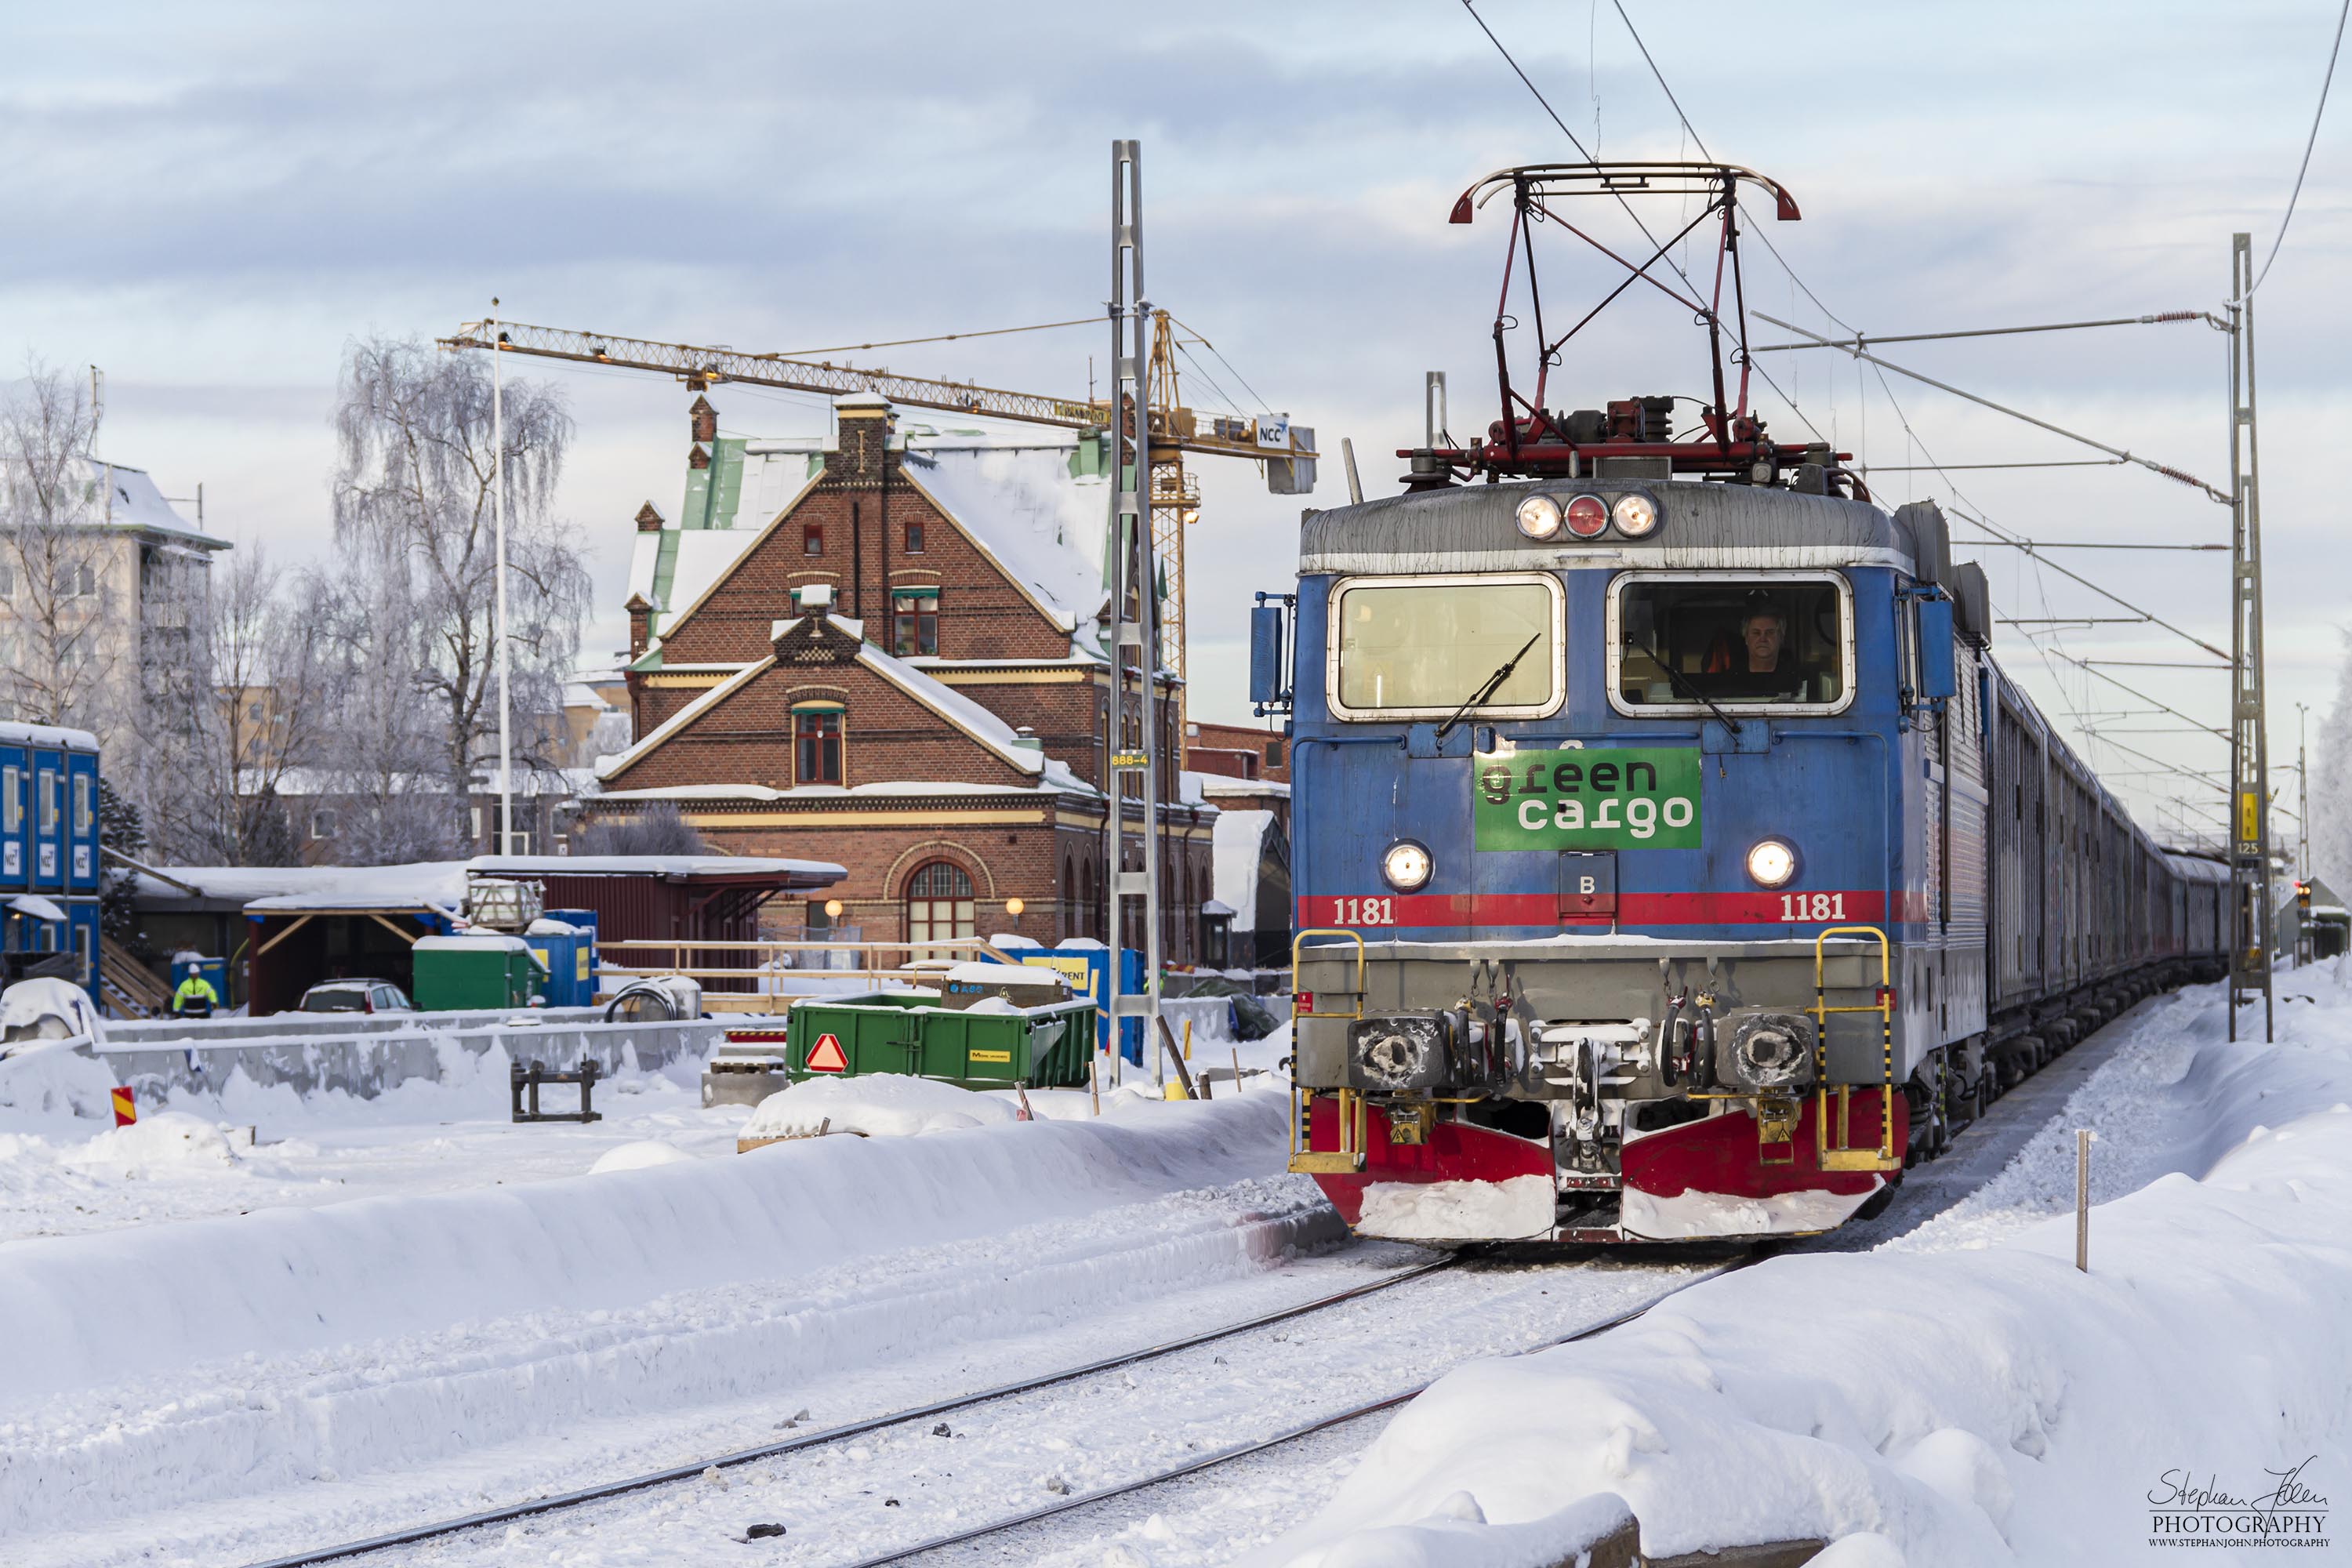 Während der Umbauphase des Bahnhofs fährt ein Güterzug durch das einzige durchgehende Gleis im bahnhof Umeå Central